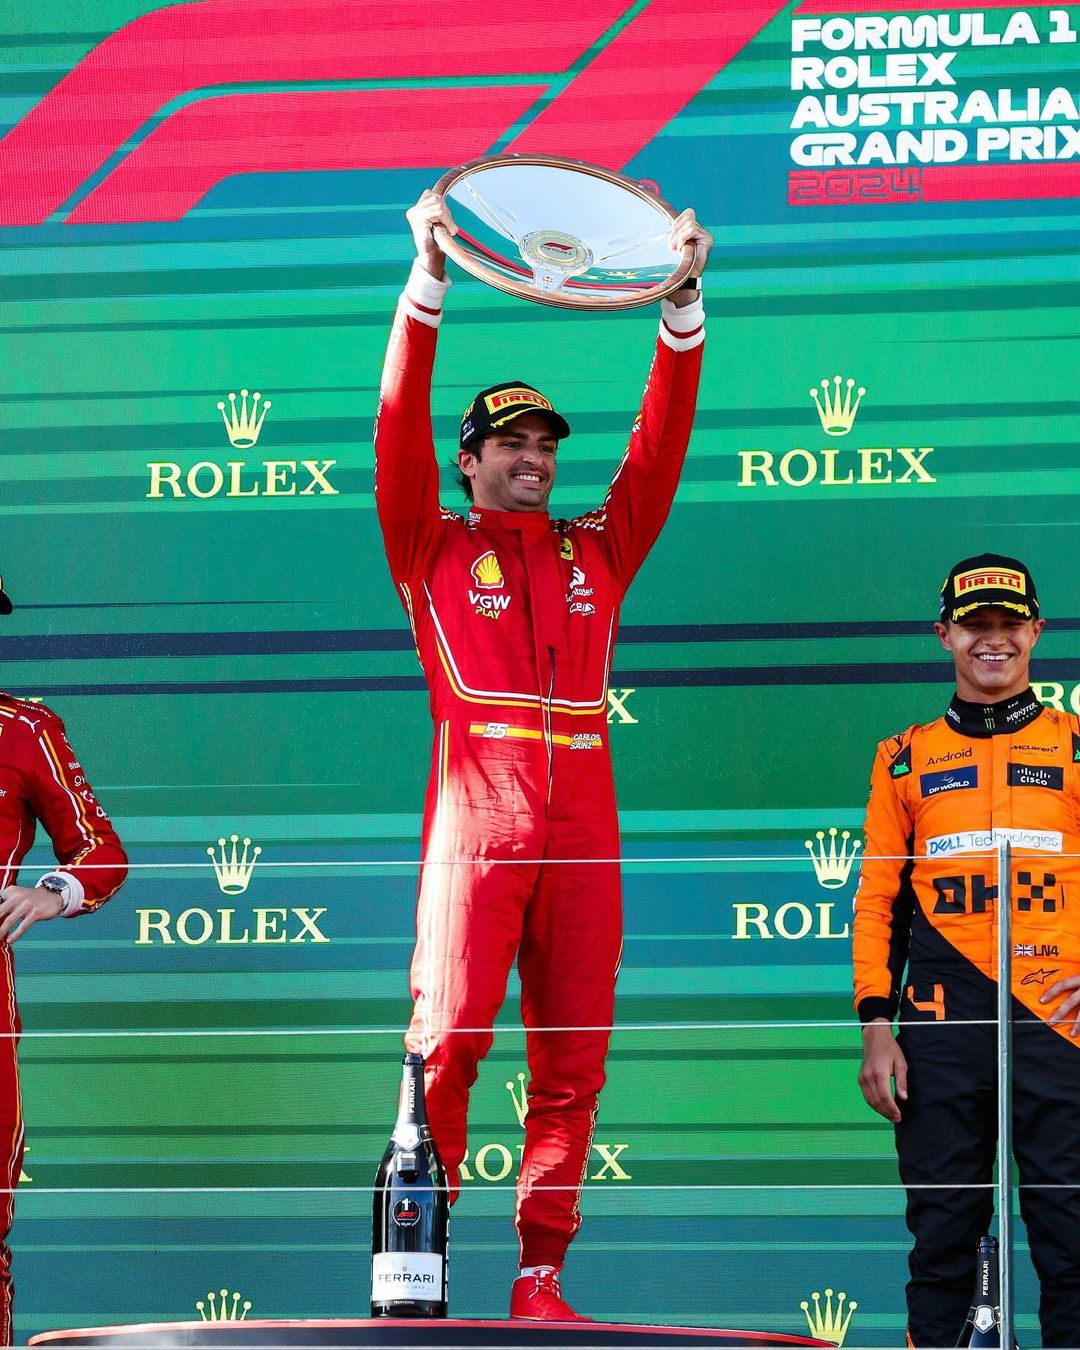 Ferrari paints Melbourne red